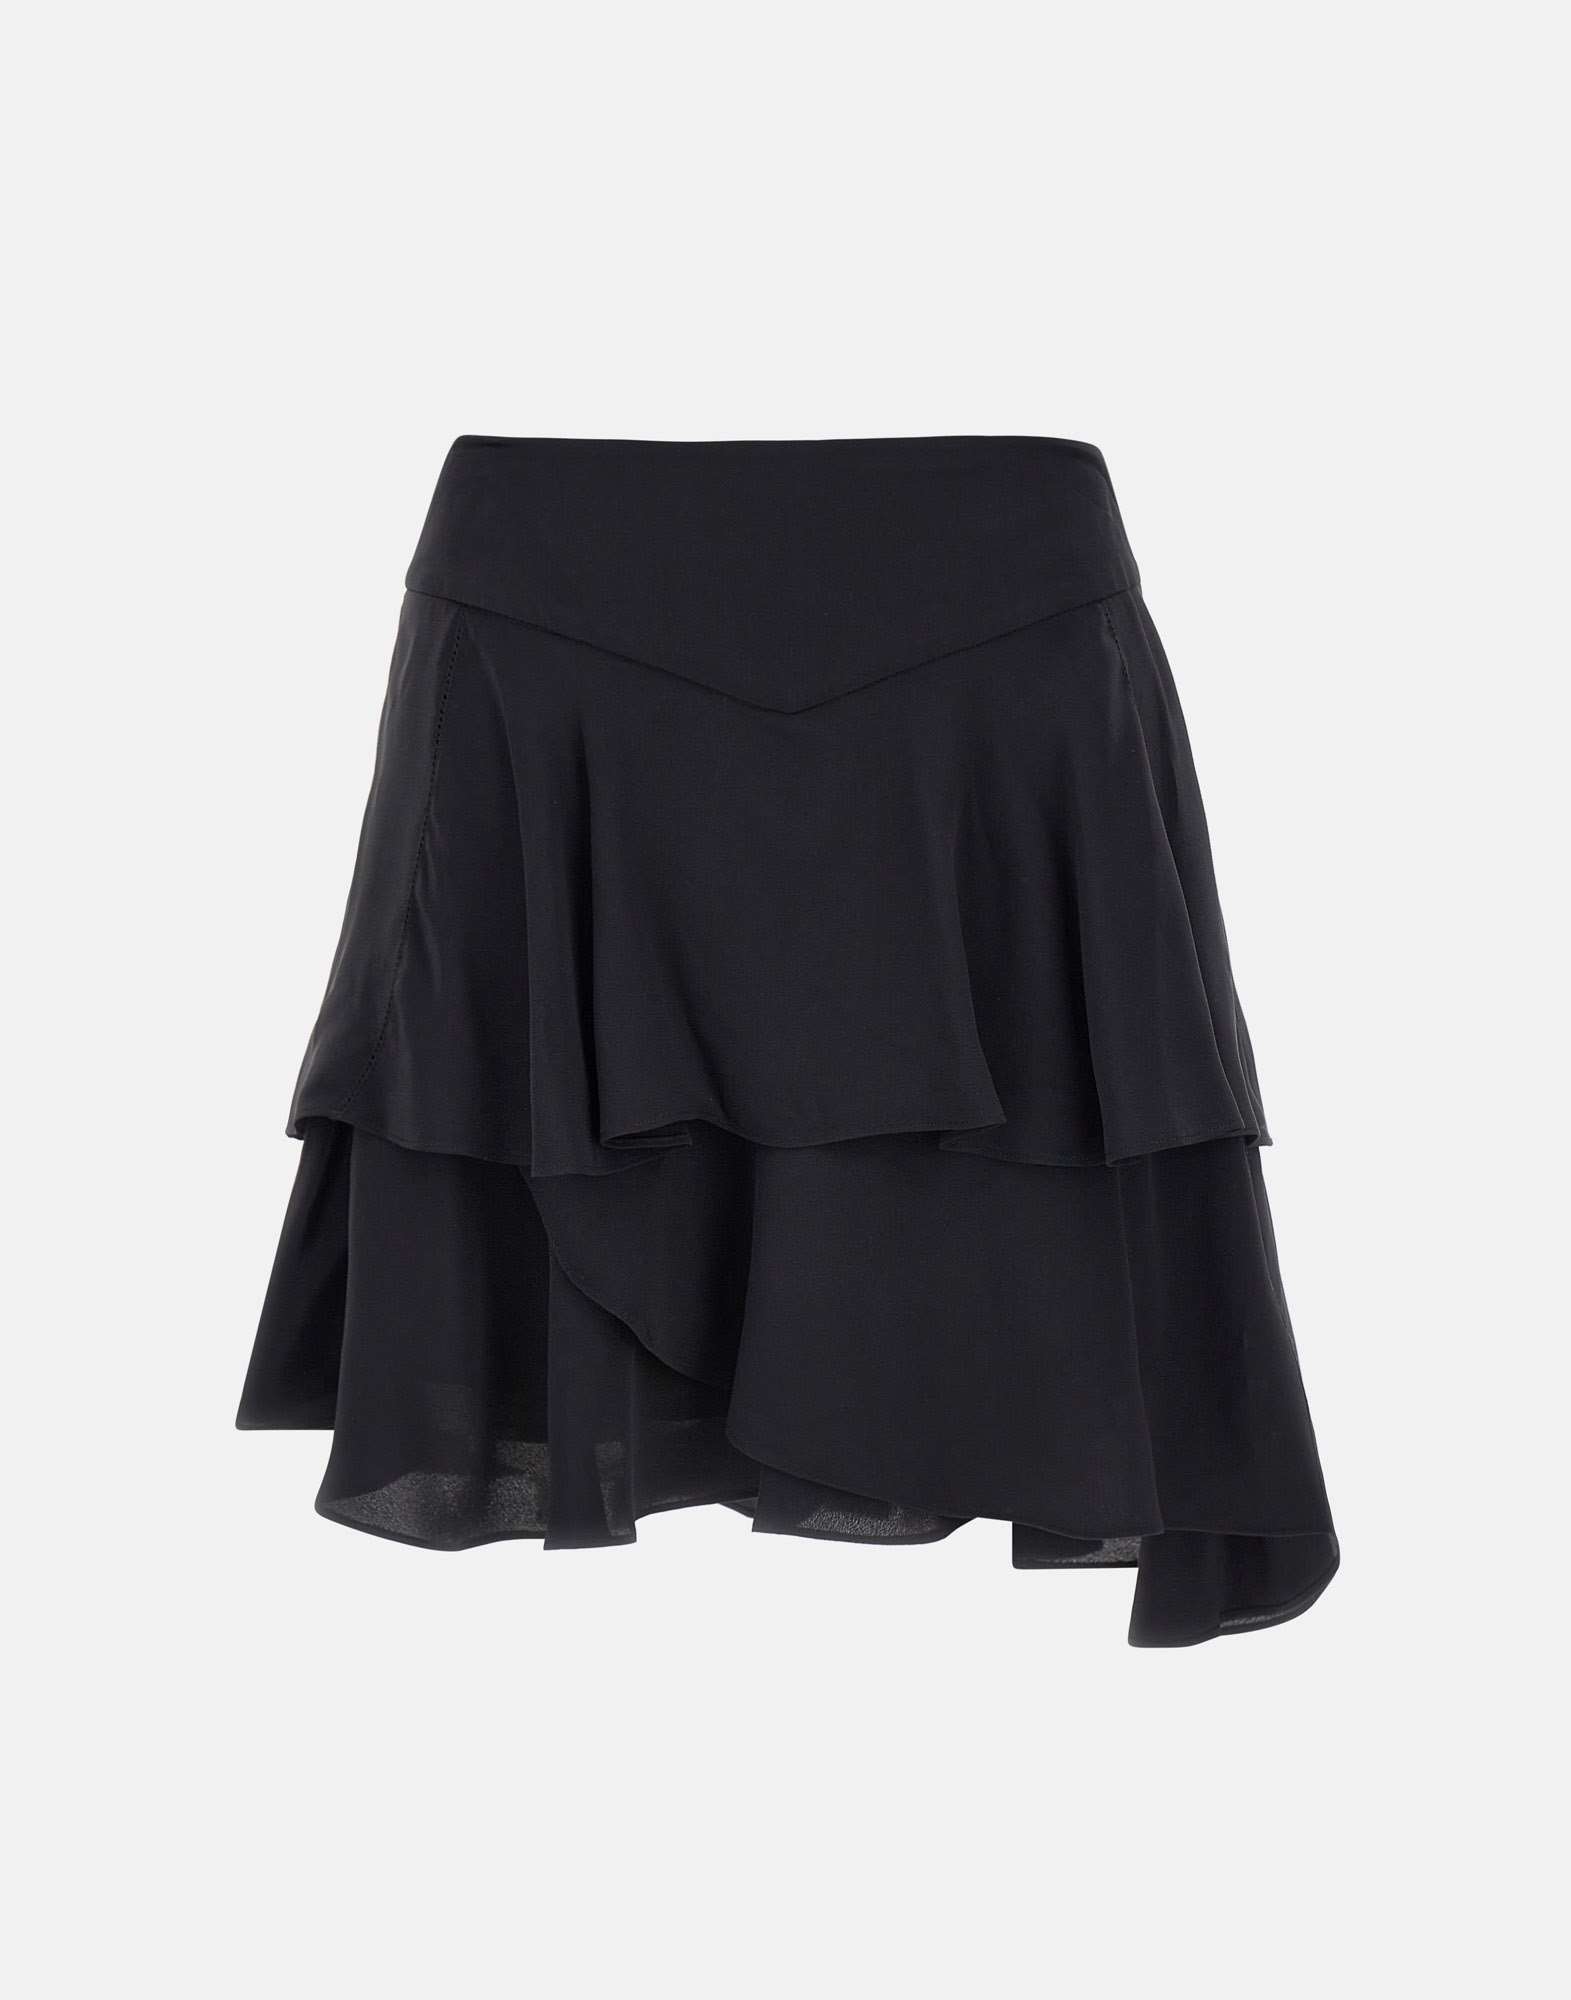 Iro Emerie Viscose And Silk Skirt In Black